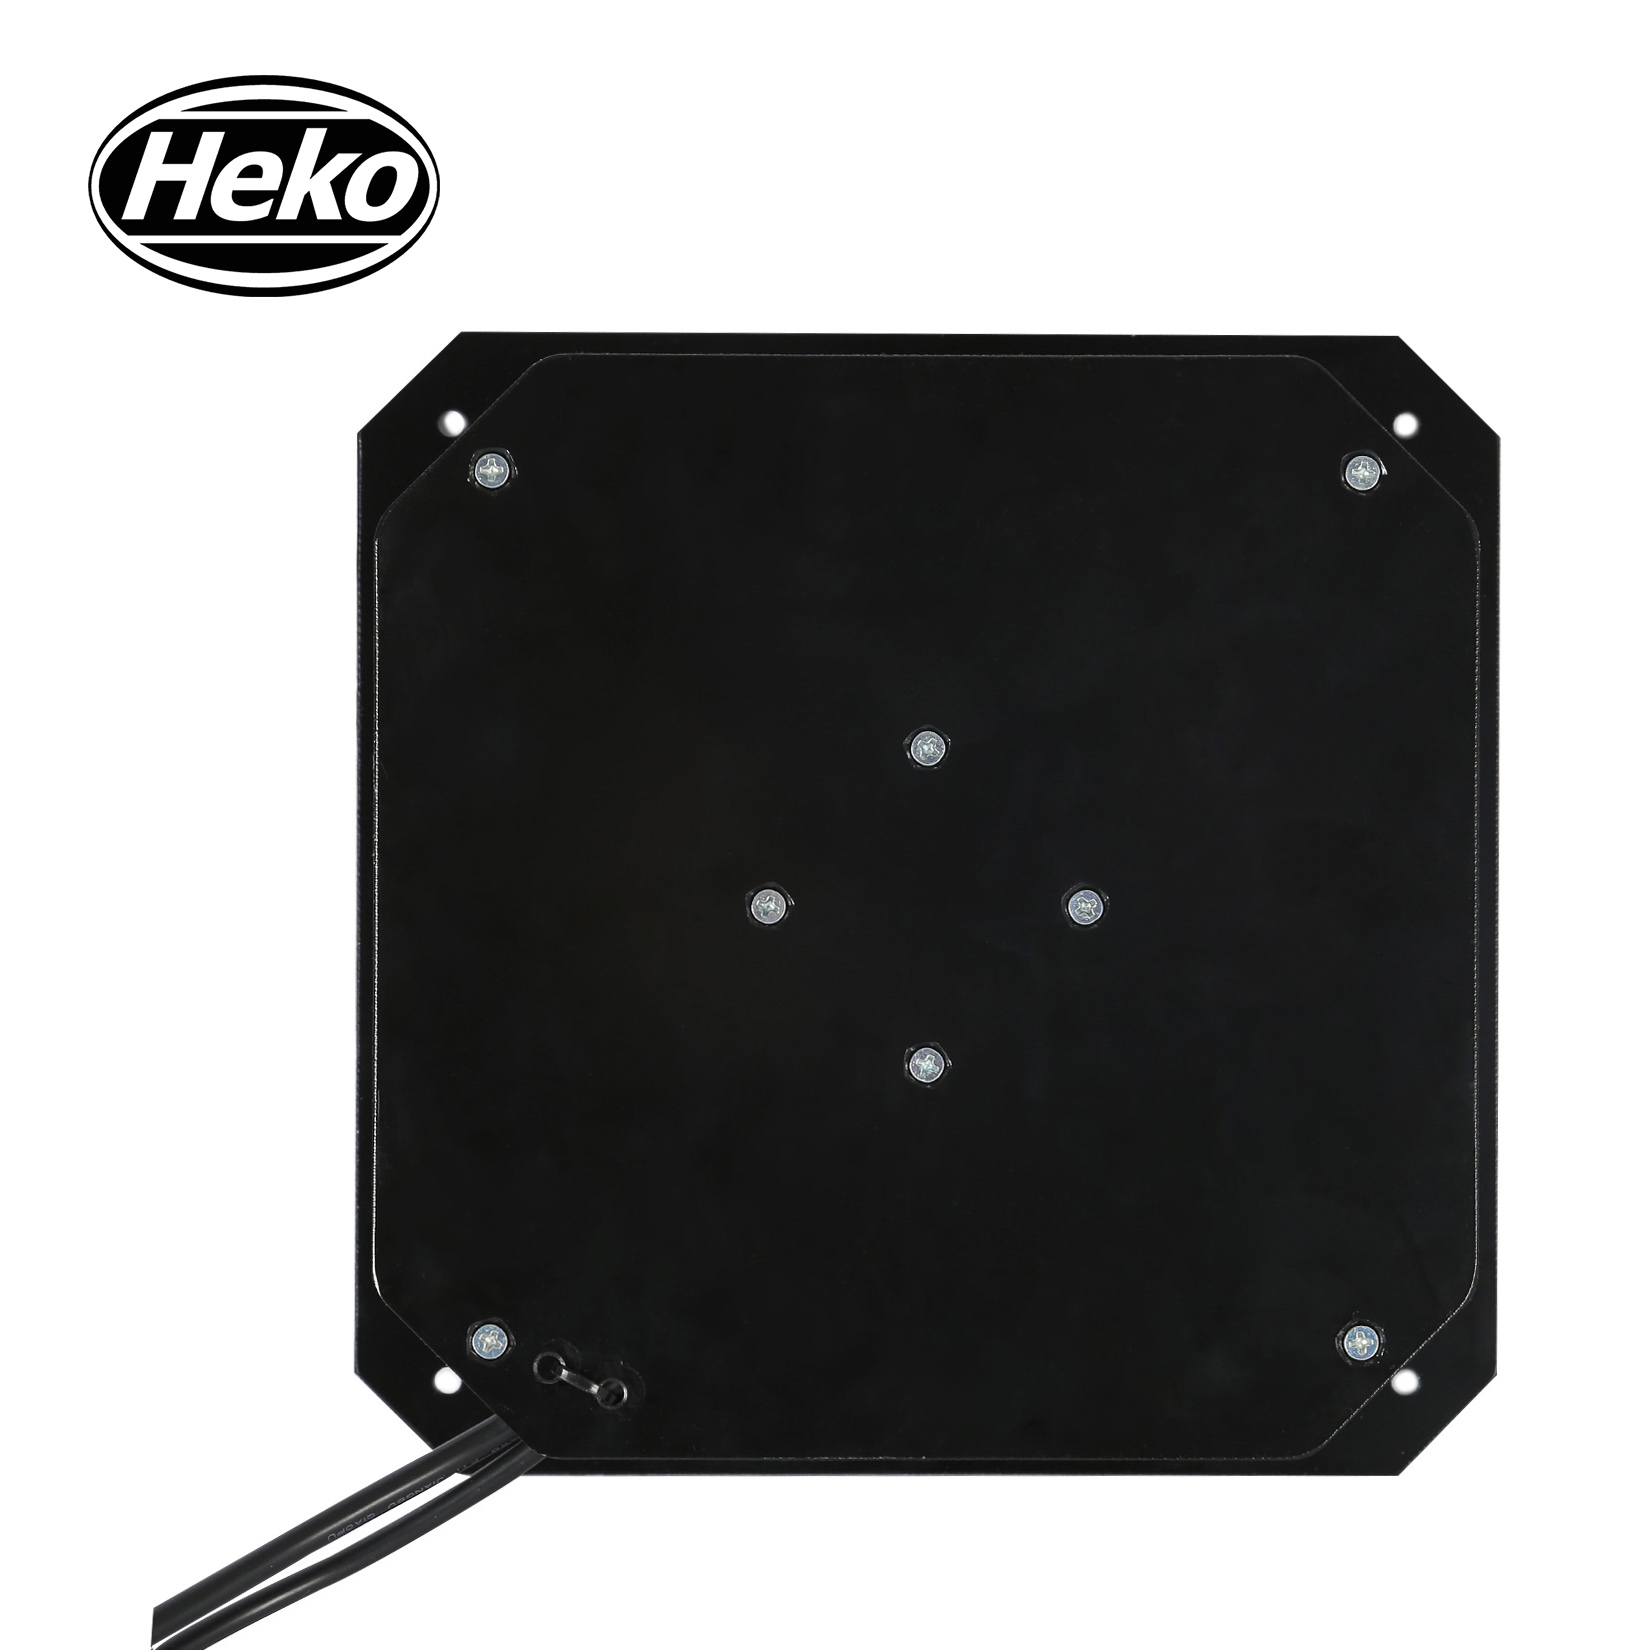 HEKO EC 190mm Framed High Quality Inline Centrifugal Fan